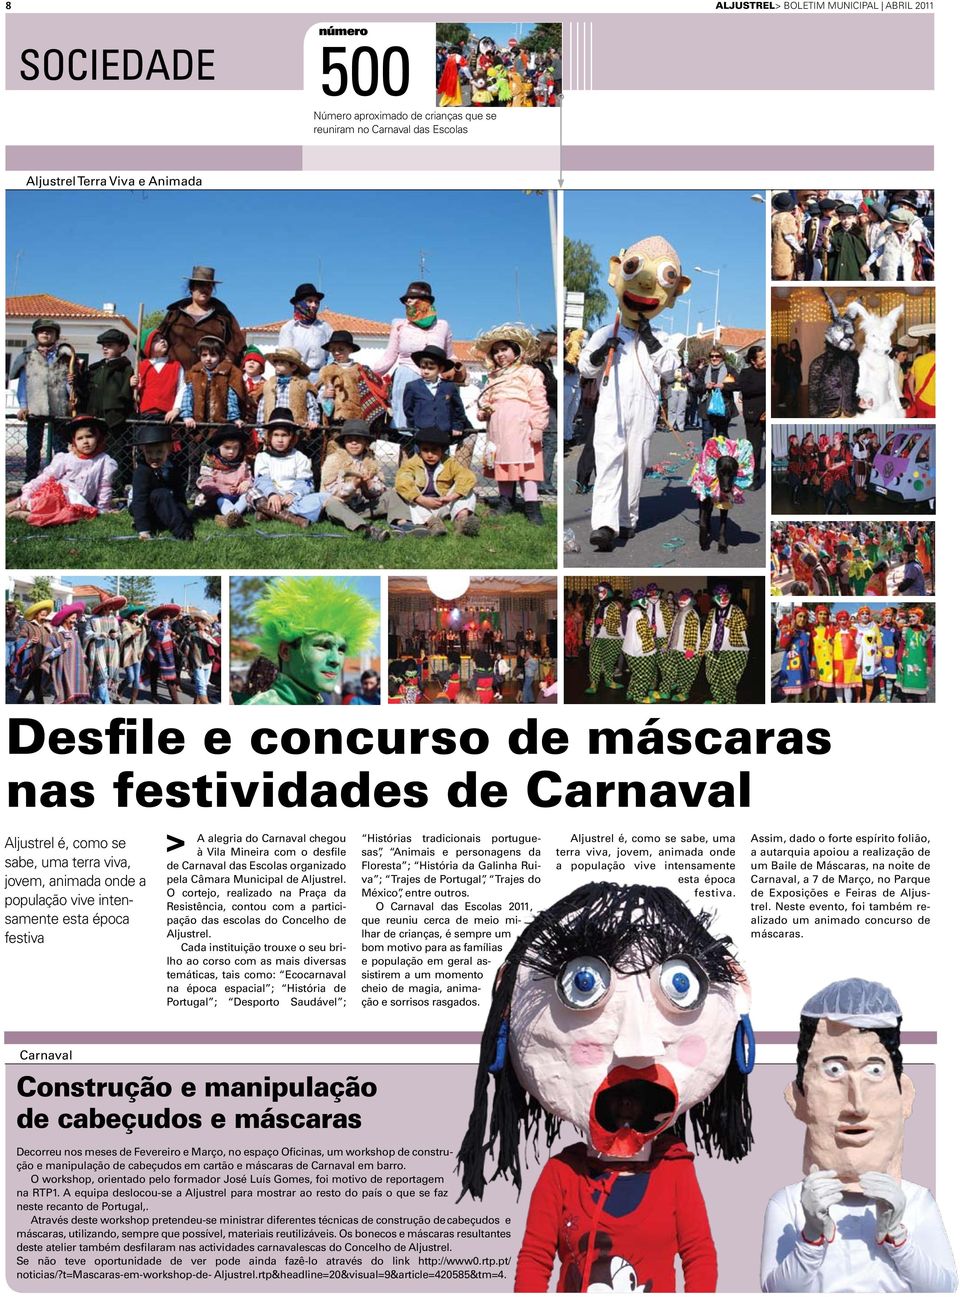 Carnaval das Escolas organizado pela Câmara Municipal de Aljustrel. O cortejo, realizado na Praça da Resistência, contou com a participação das escolas do Concelho de Aljustrel.